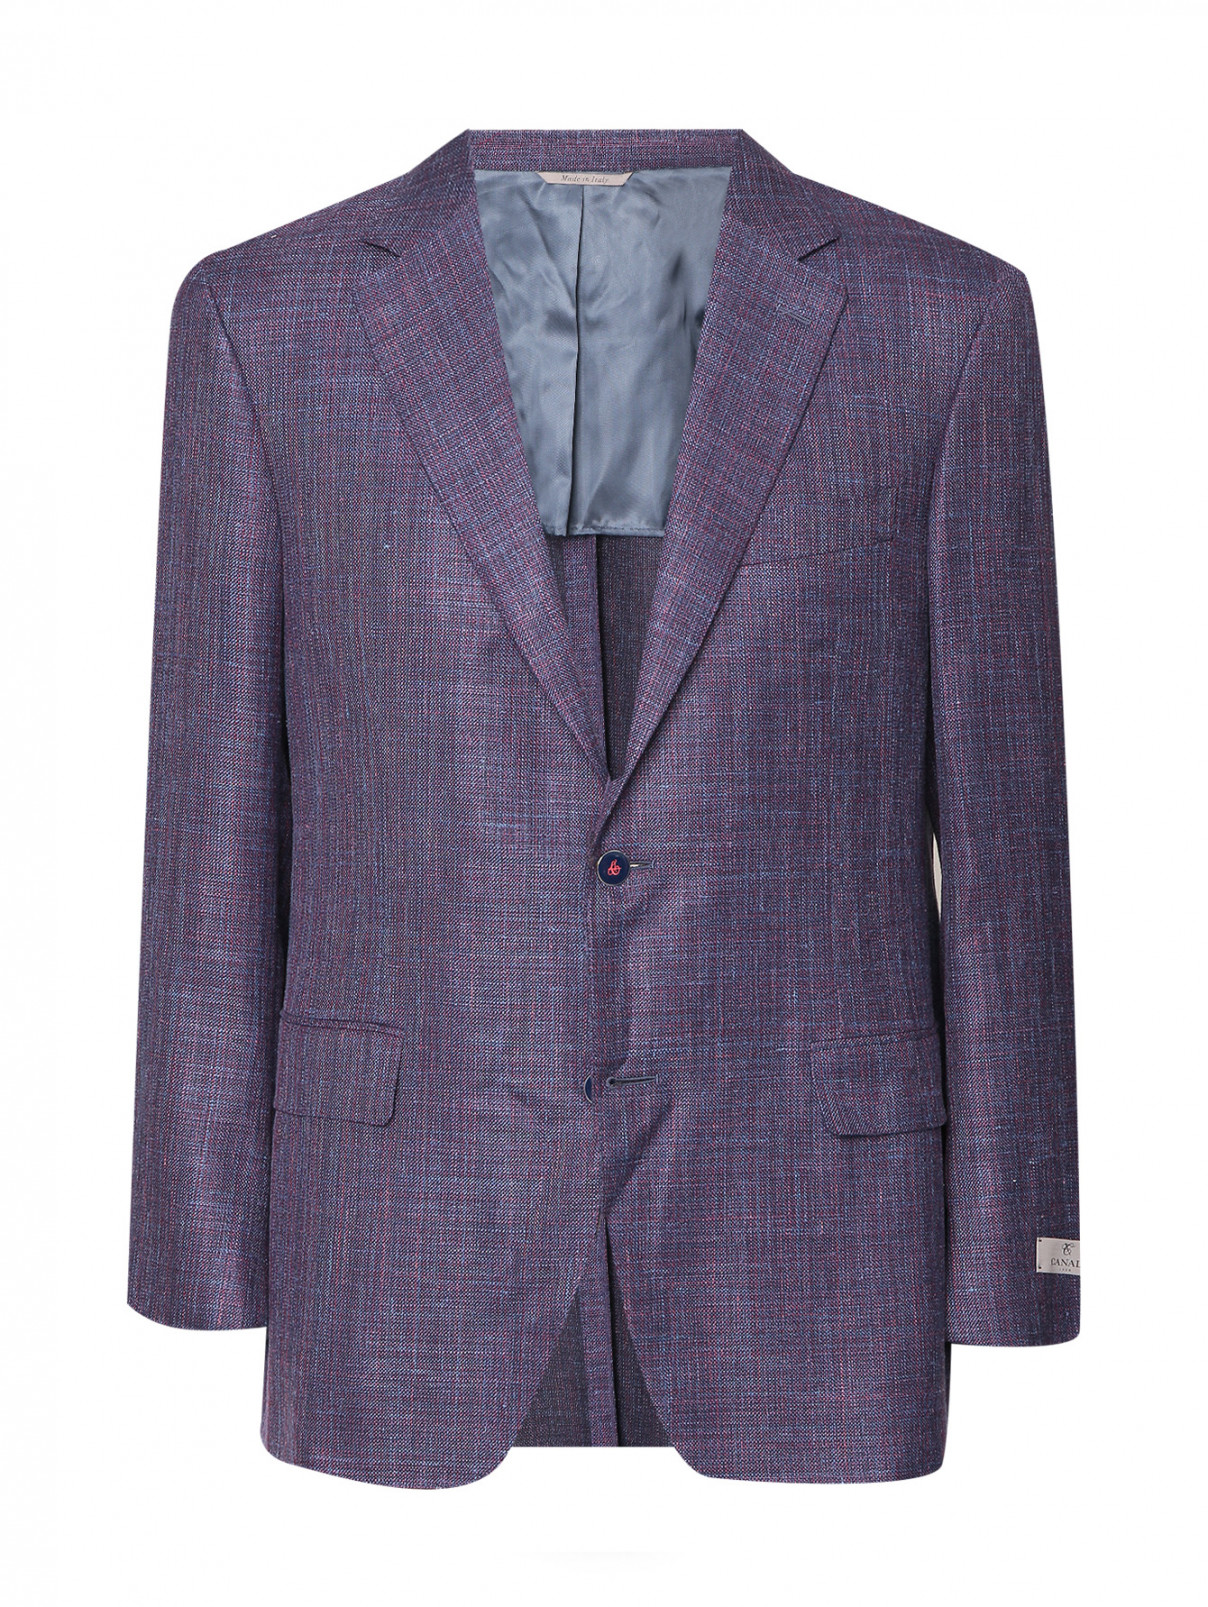 Пиджак из шерсти и шелка с узором Canali  –  Общий вид  – Цвет:  Фиолетовый